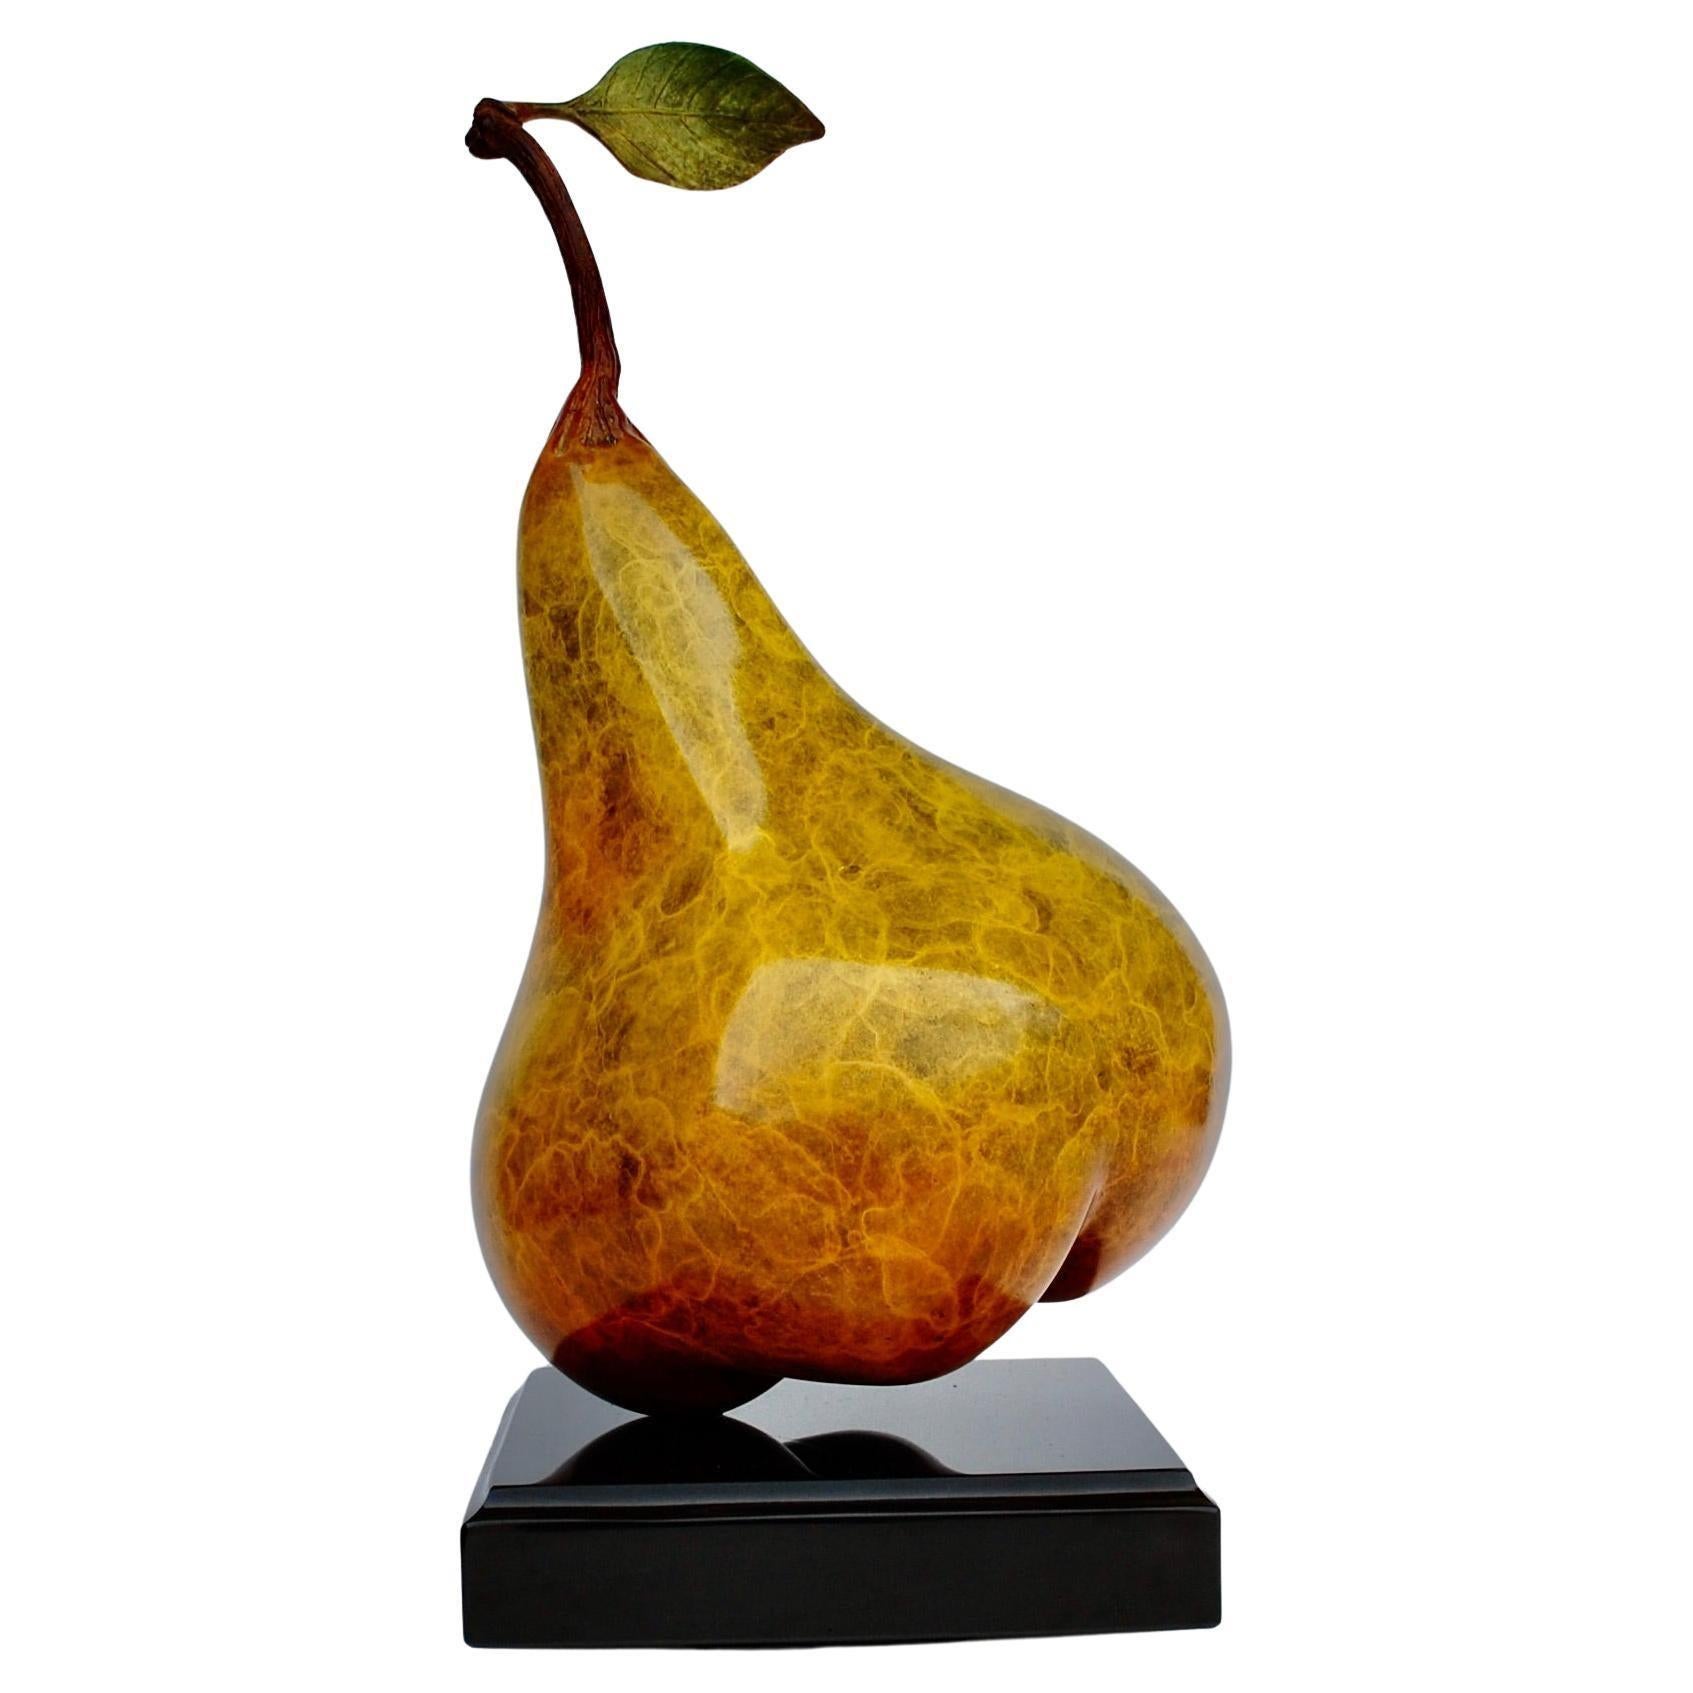 Randi Grantham Figurative Sculpture - Pear With Leaf Patinated Bronze Sculpture 